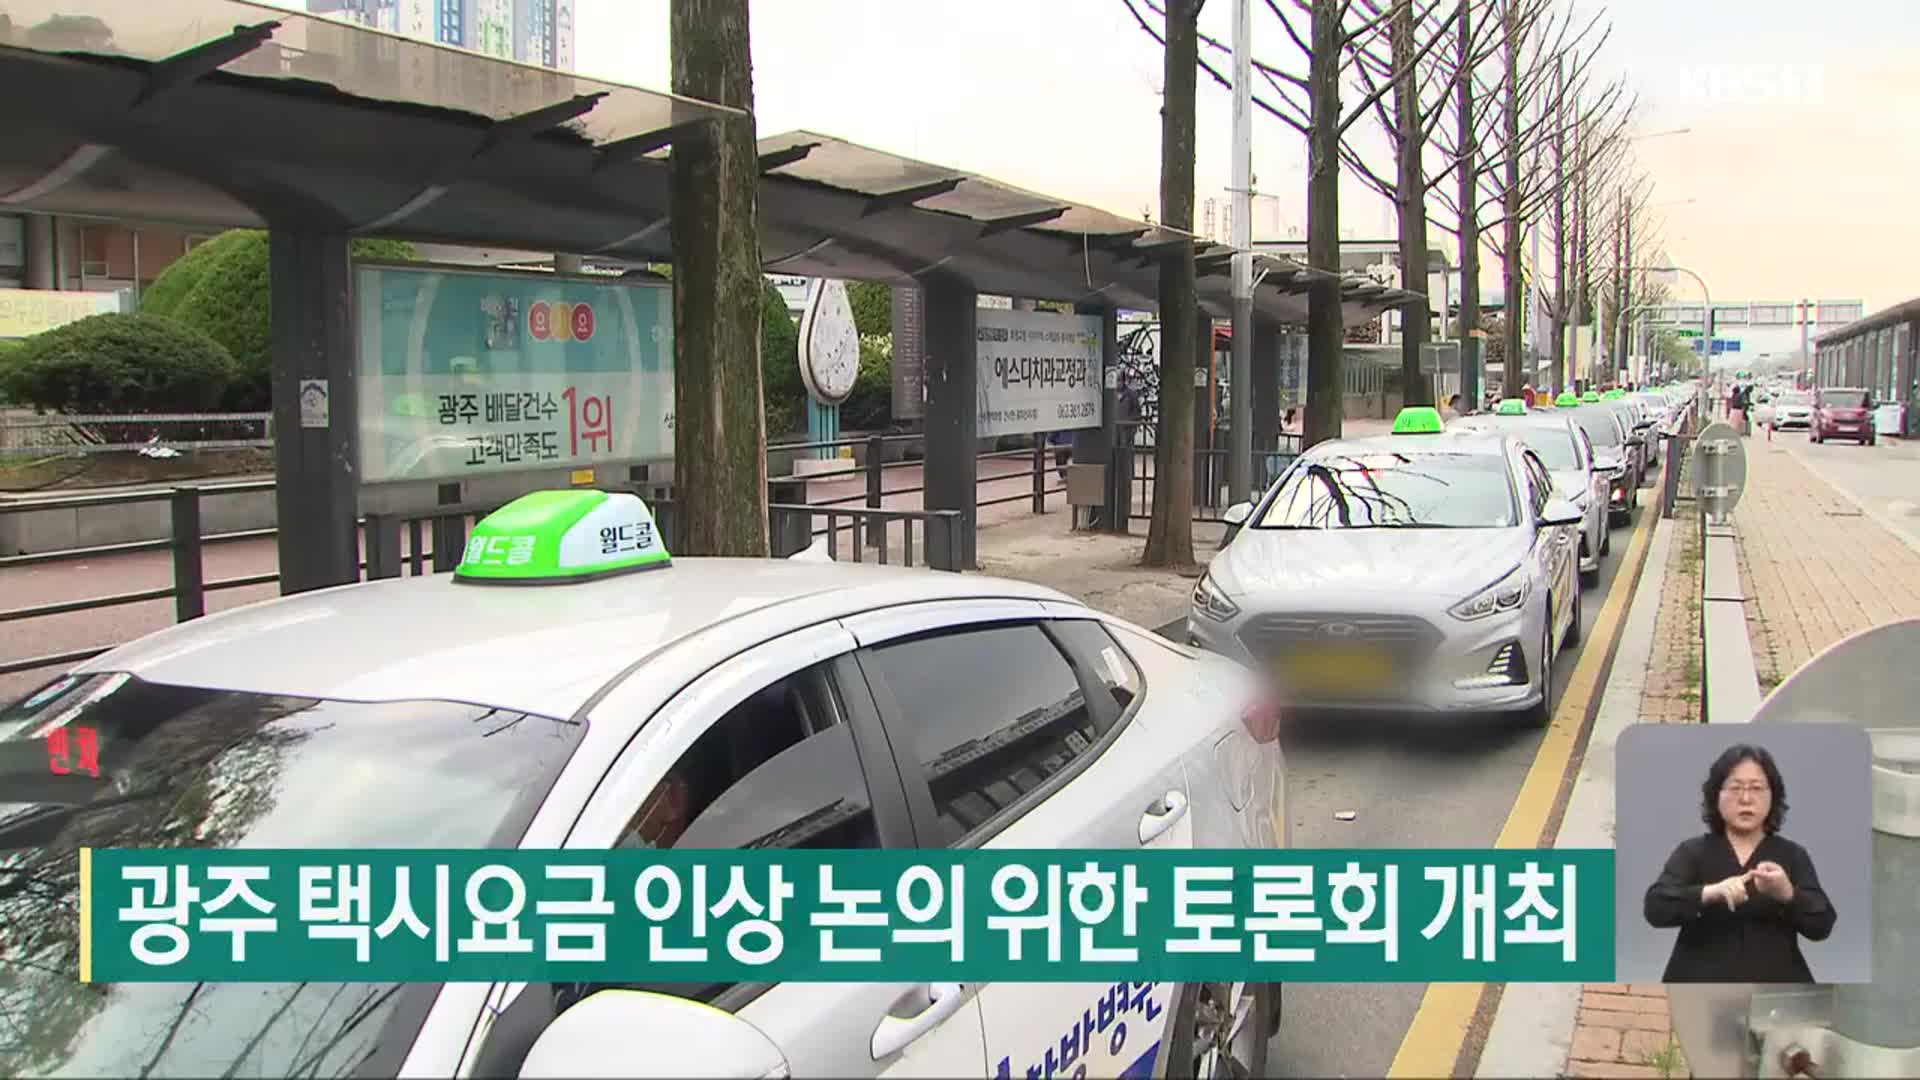 광주 택시요금 인상 논의 위한 토론회 개최